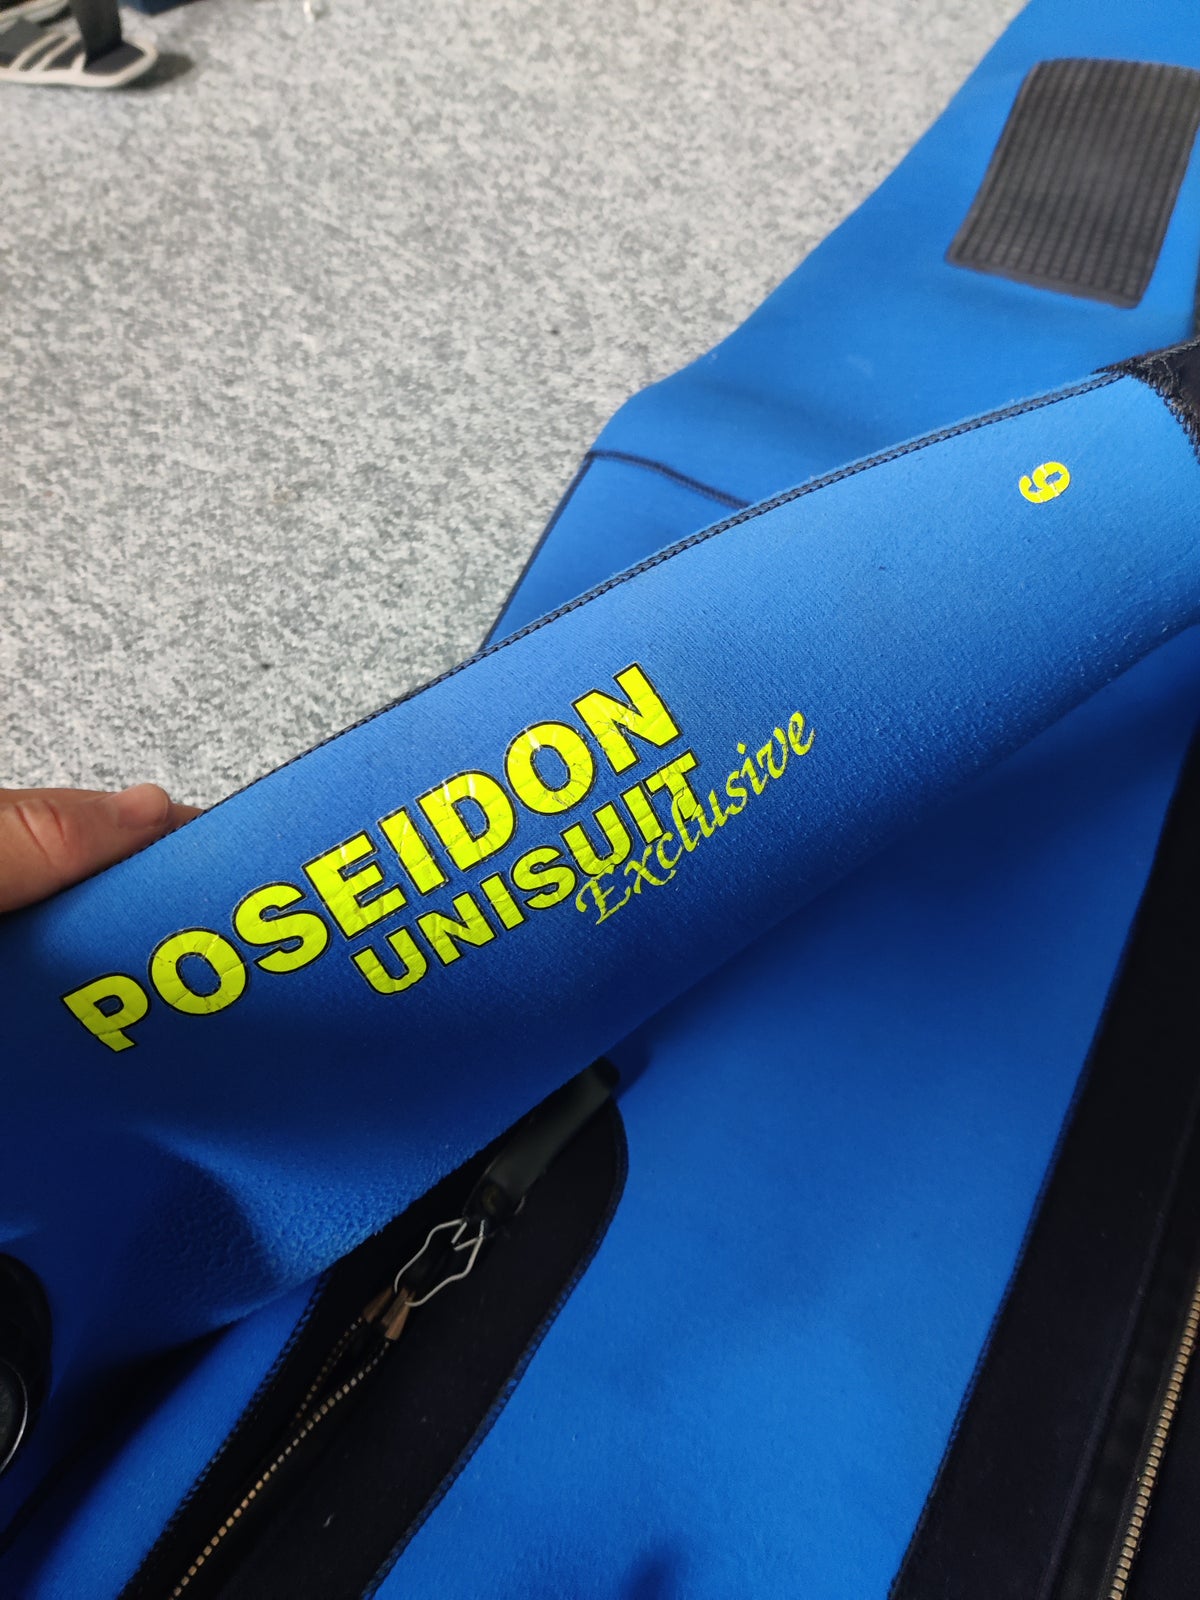 Poseidon Unisuit Exclusive